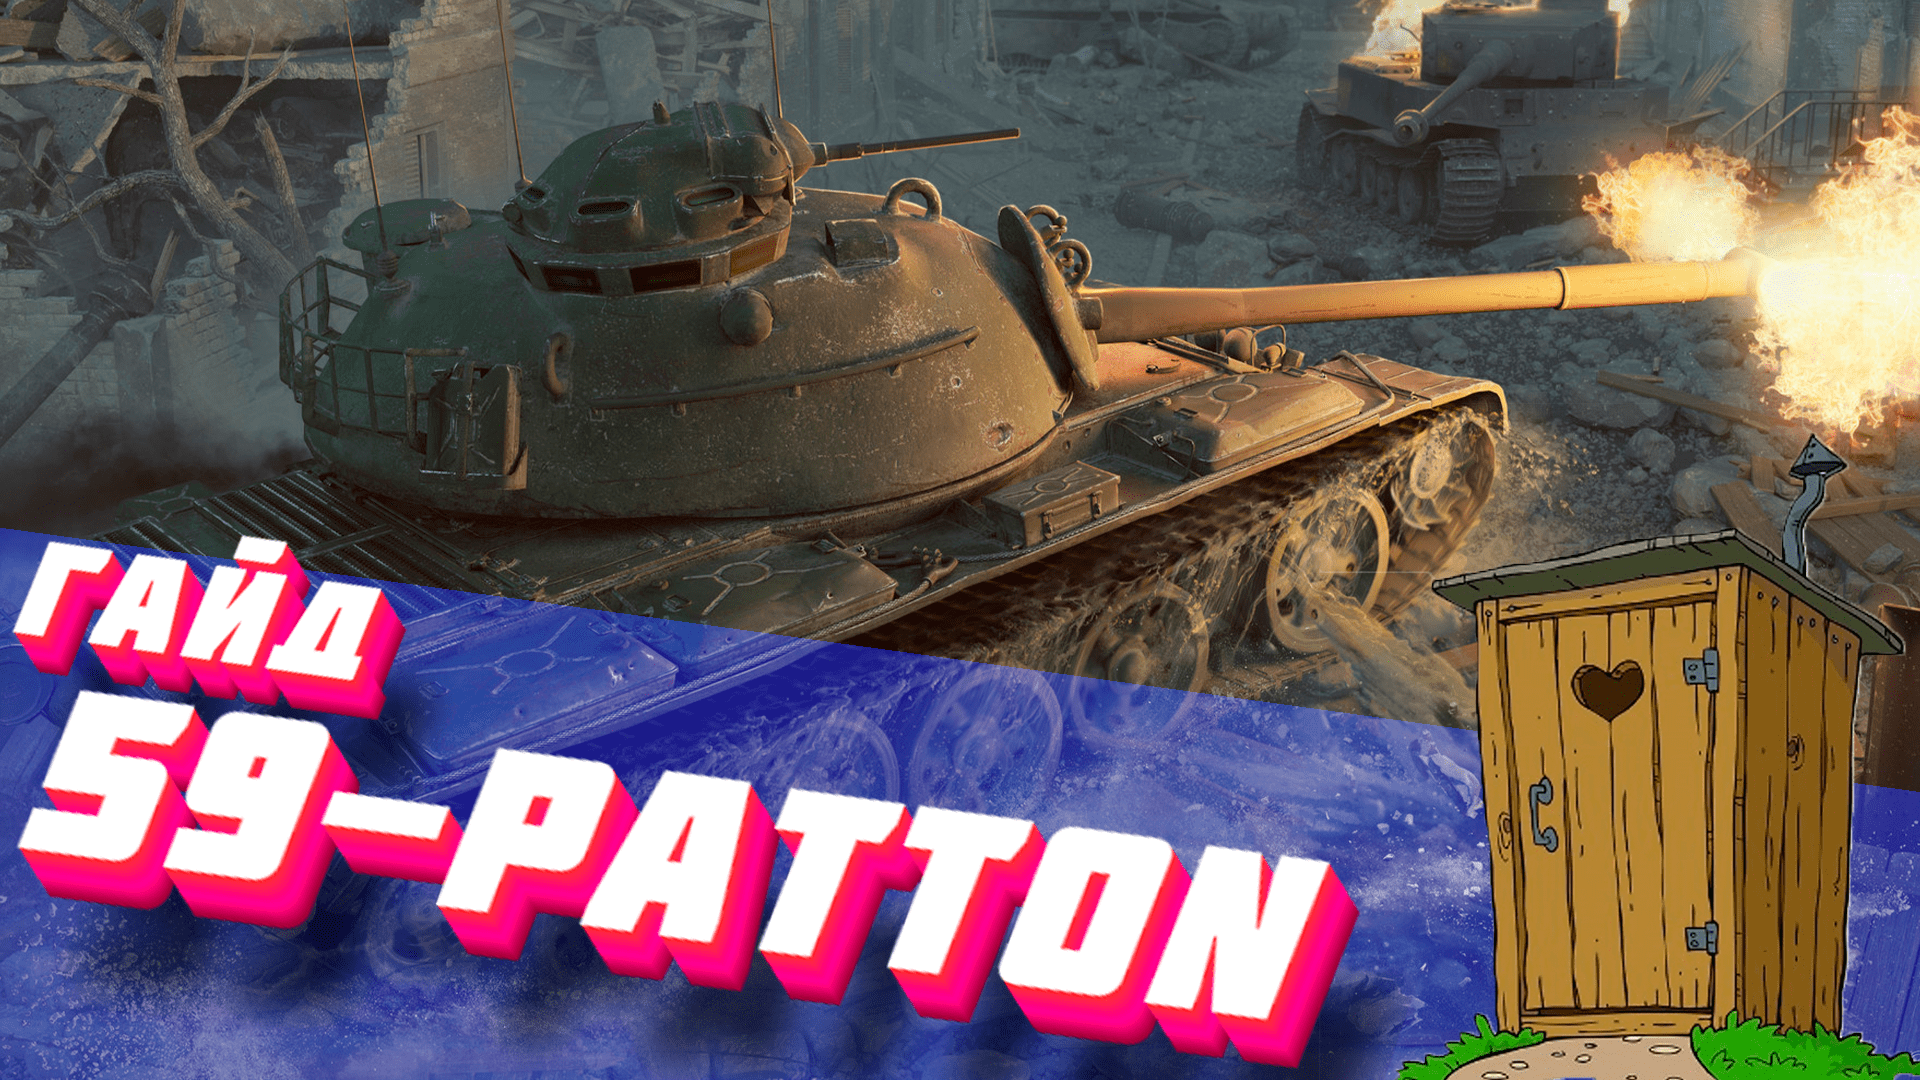 59-Patton "Срачельник" (ГАЙД)